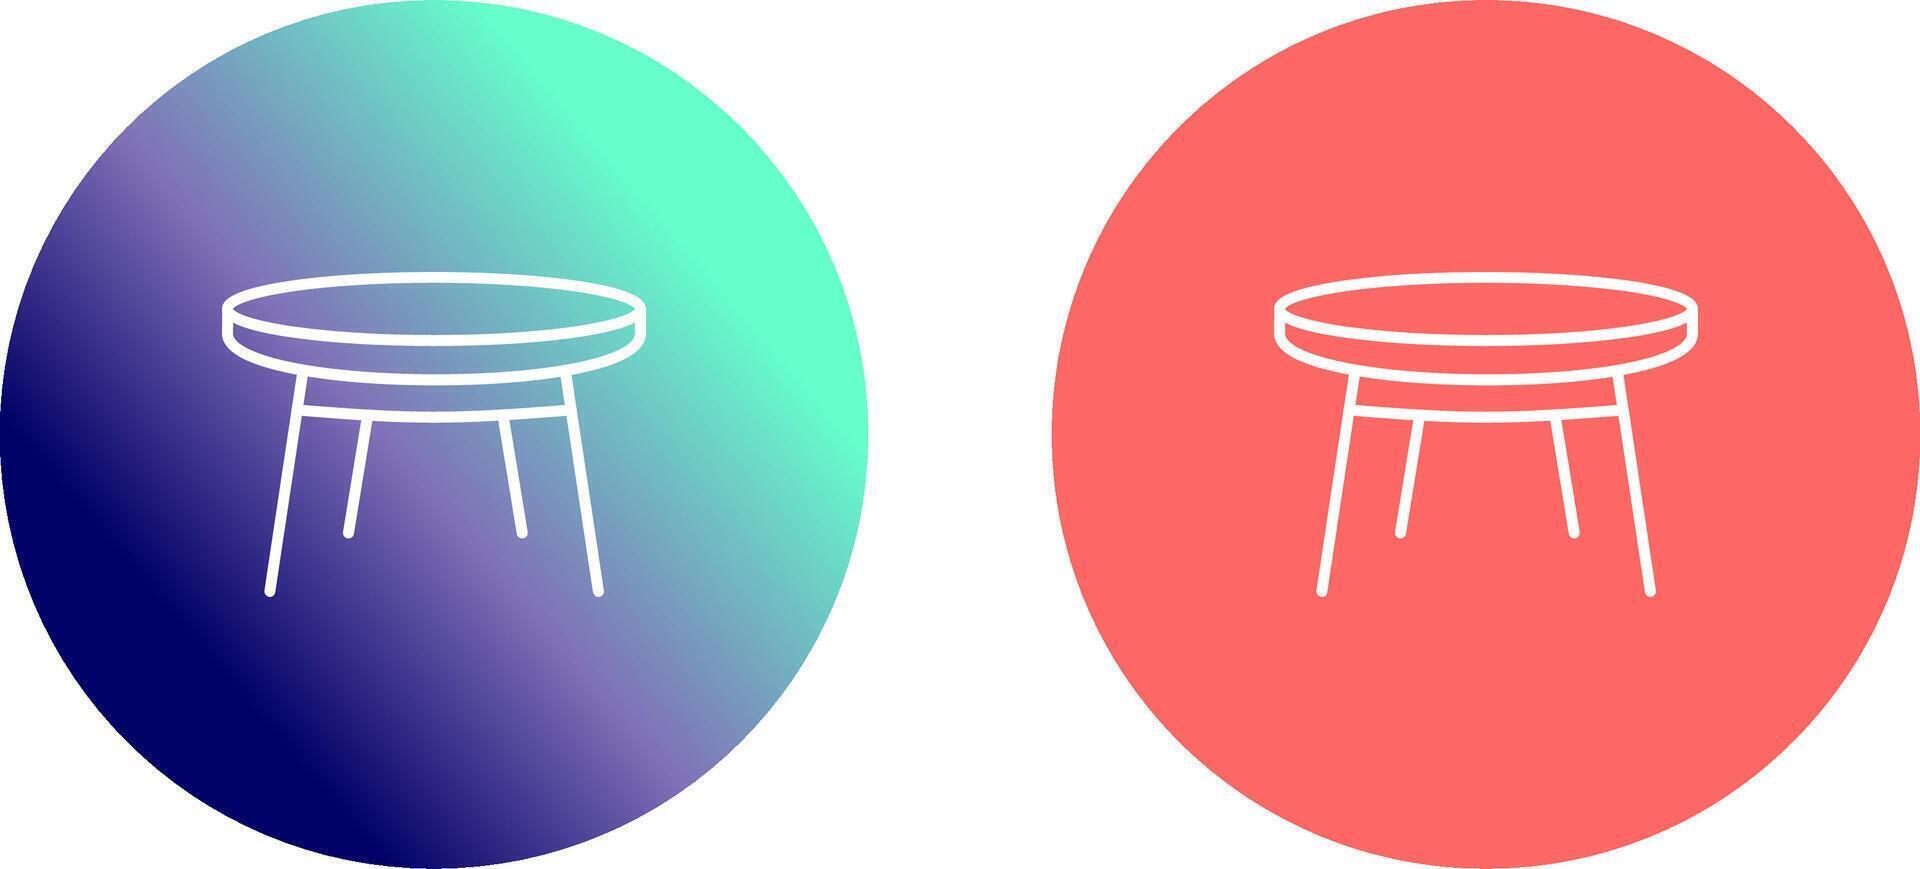 Small Table Icon Design vector